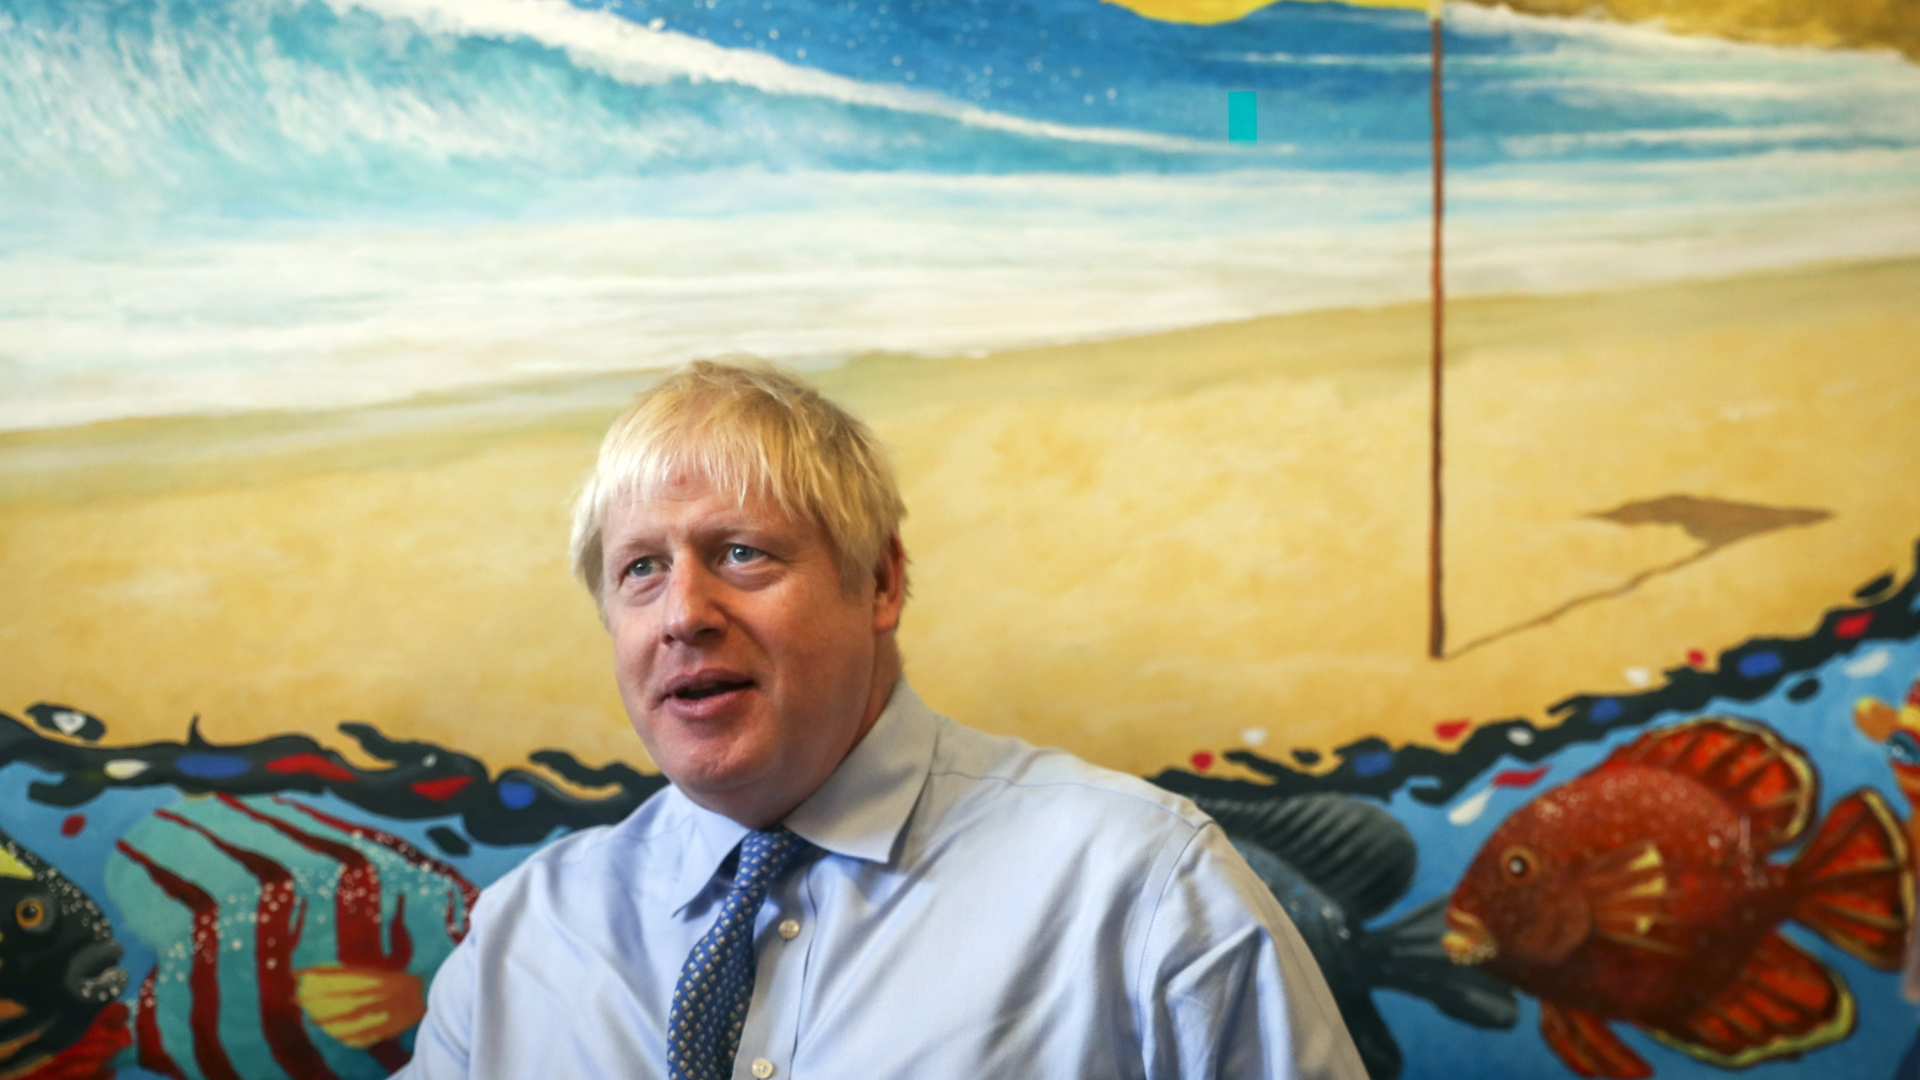 Der britische Premier Boris Johnson beim Besuch des Royal Cornwall Hospital in Truro. | SIMON DAWSON/POOL/EPA-EFE/REX